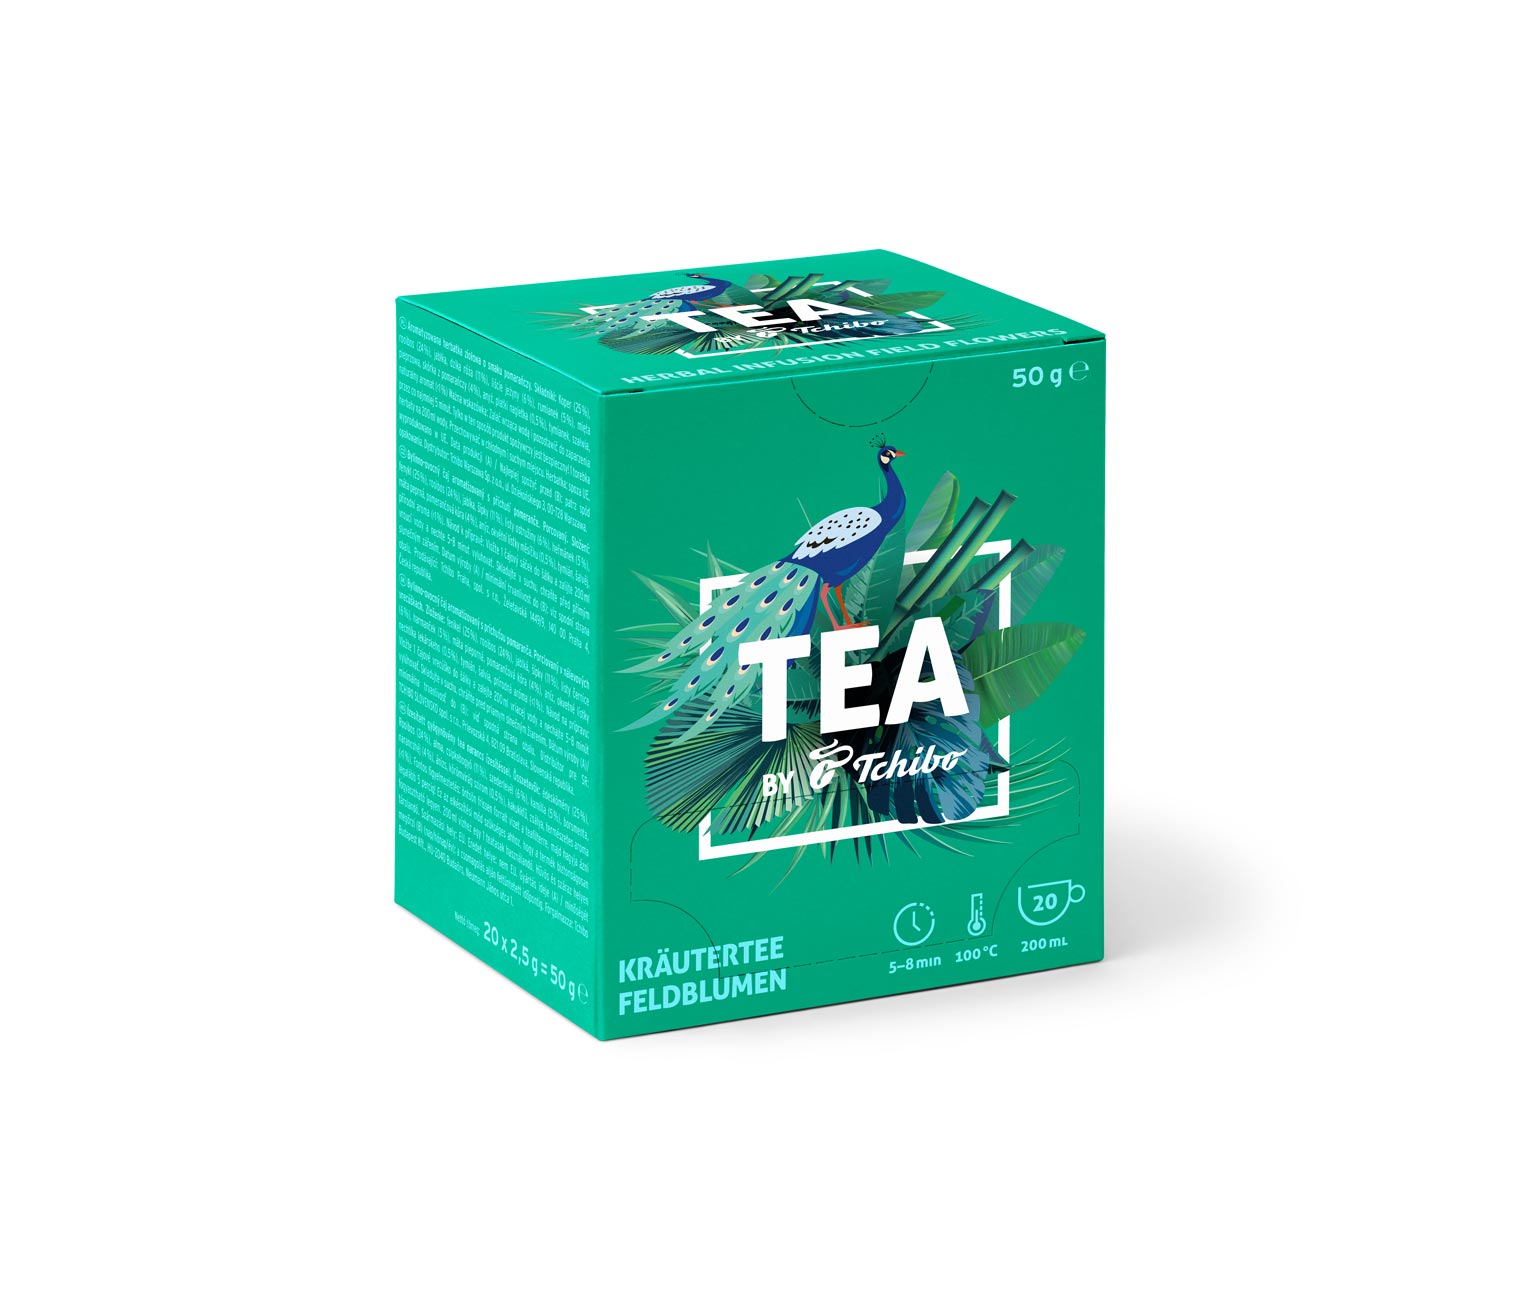 TEA by Tchibo herbata ziołowa: kwiaty polne - 8x 20 torebek 527230 w Tchibo